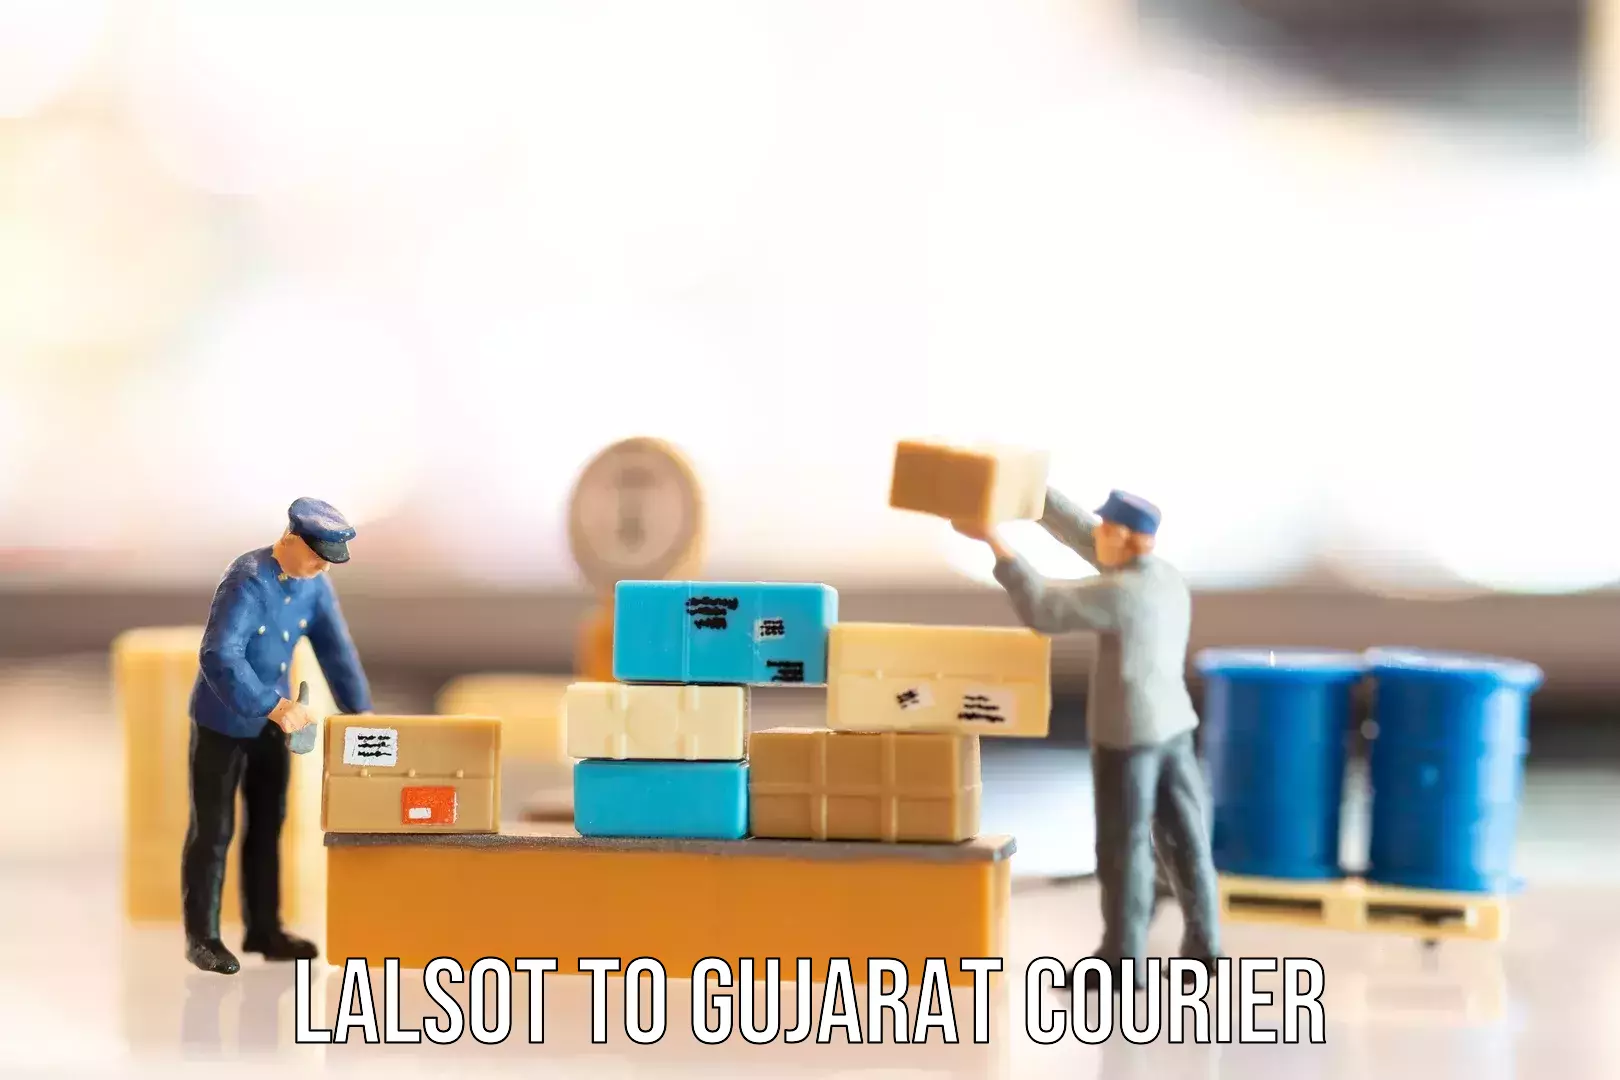 Baggage transport management Lalsot to Gujarat